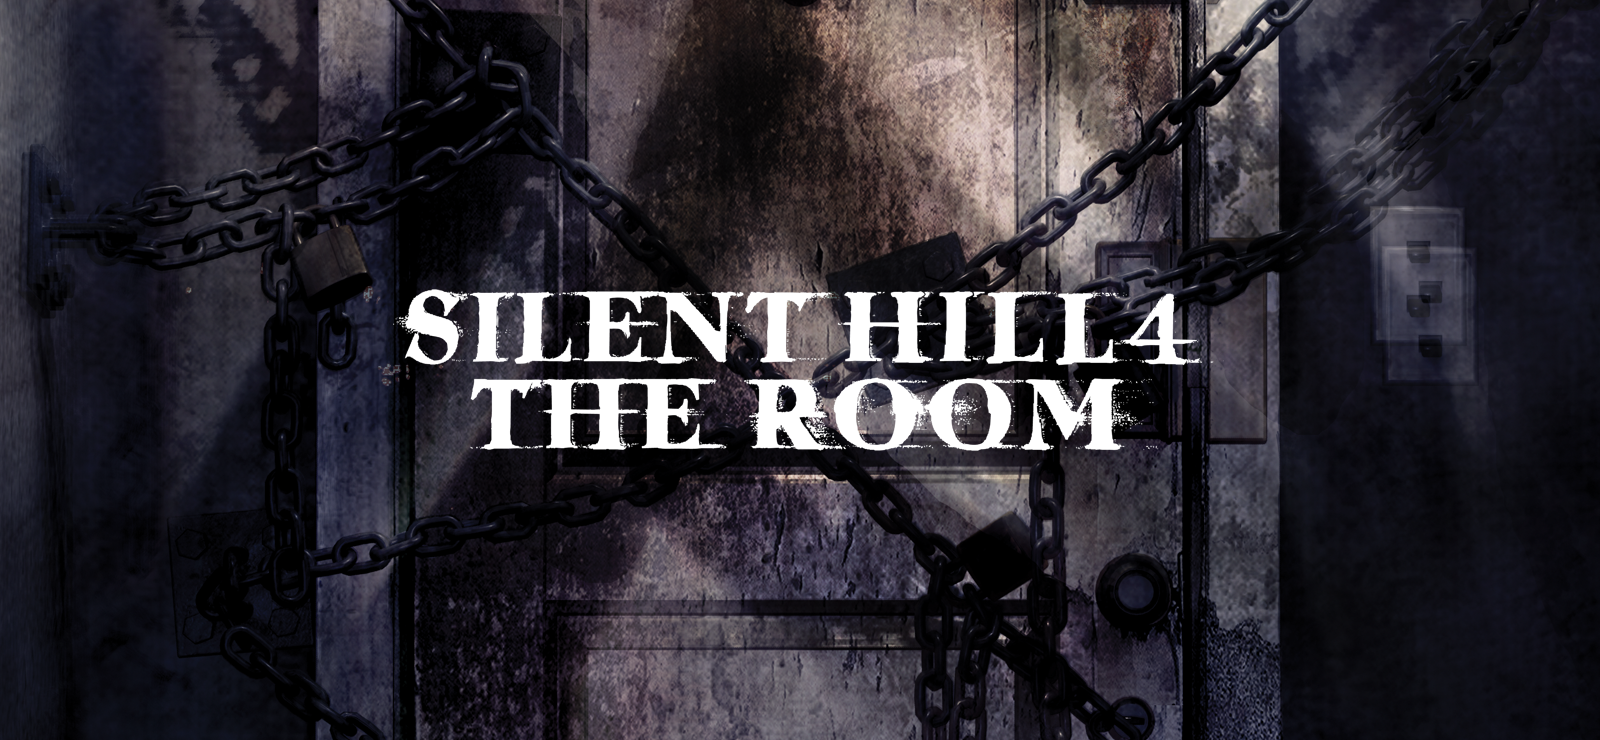 BESTSELLER - Silent Hill 4: The Room